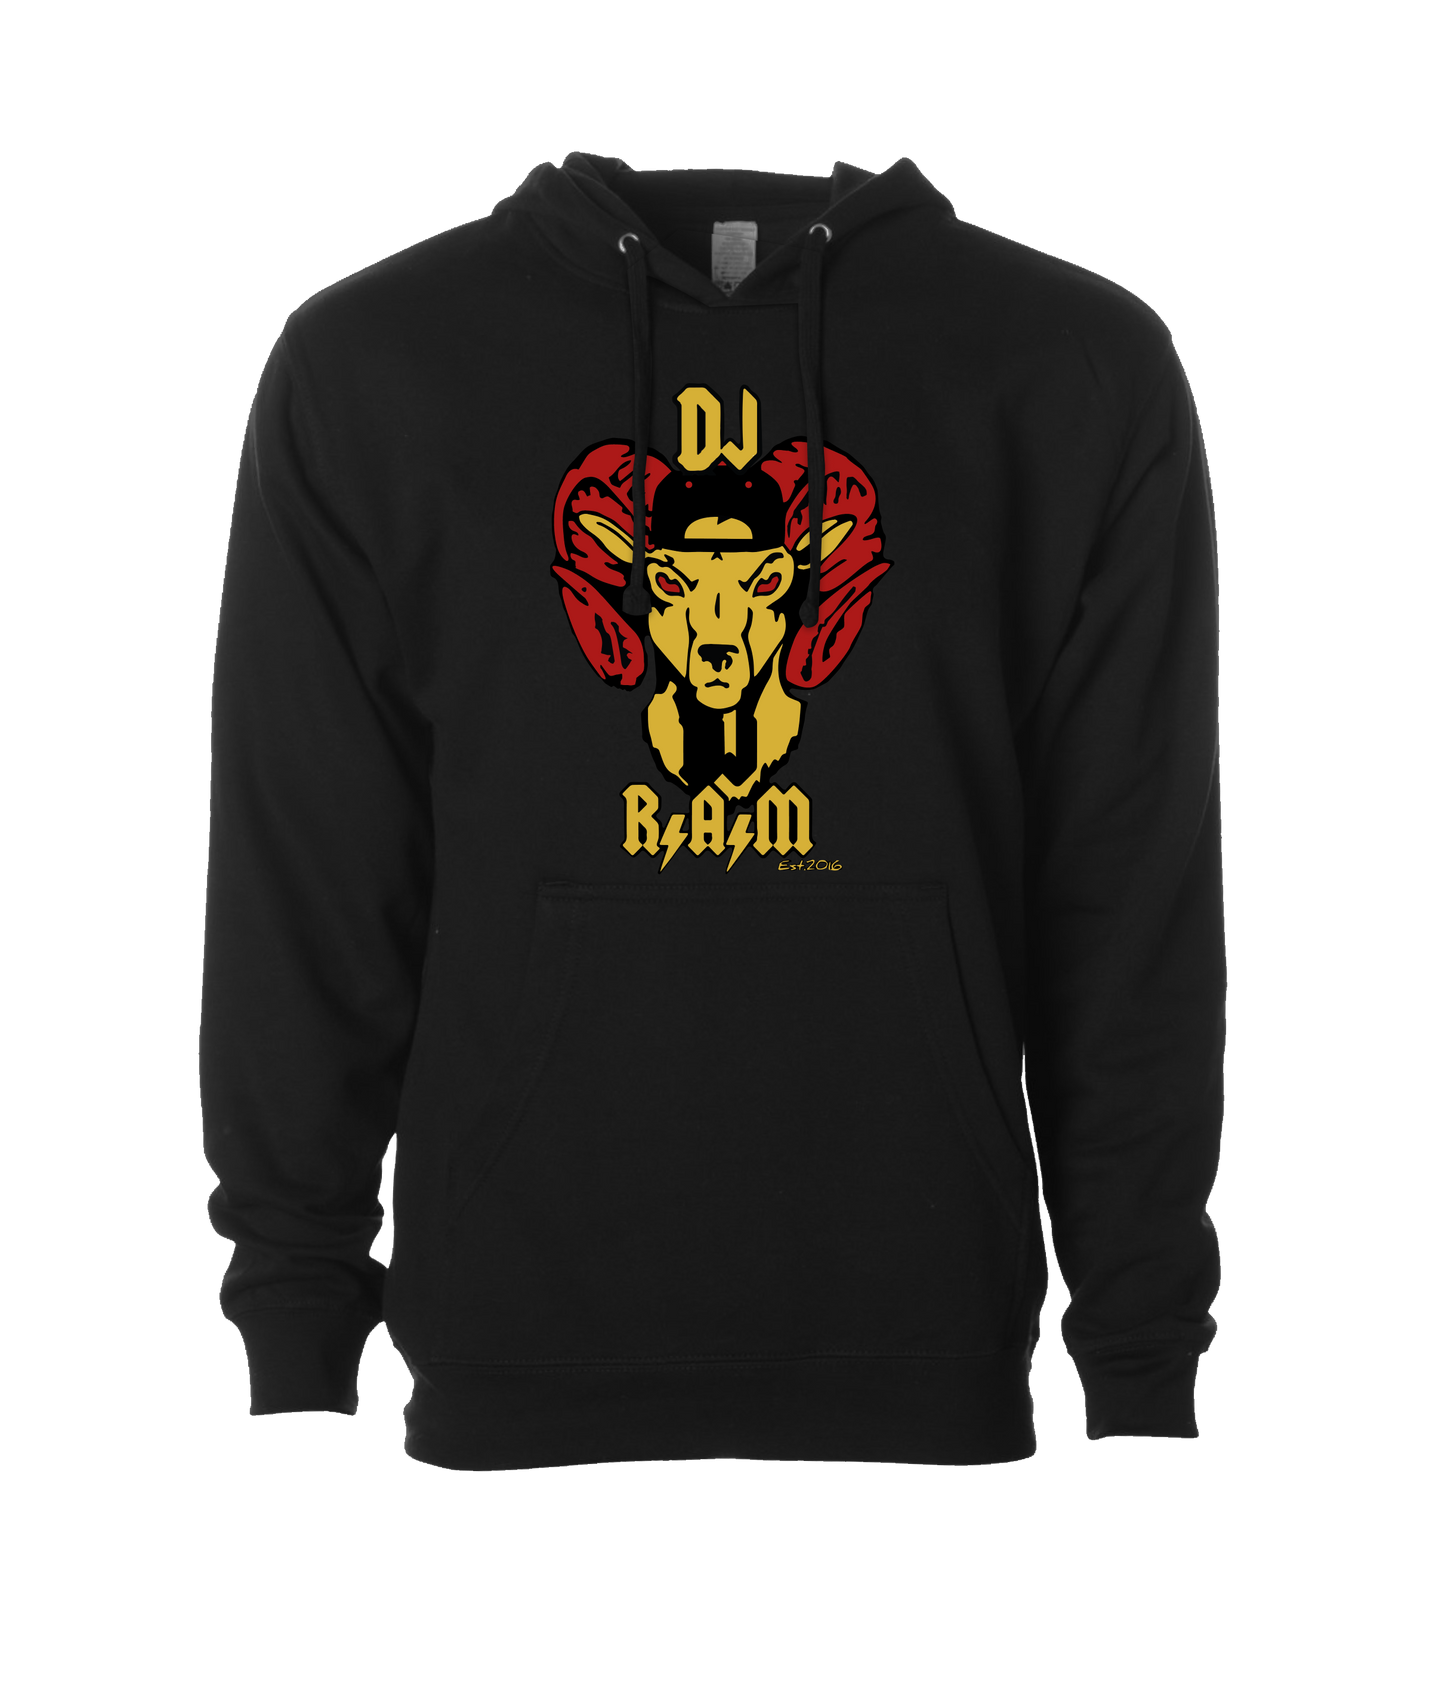 DJ R.A.M - Logo - Black Hoodie